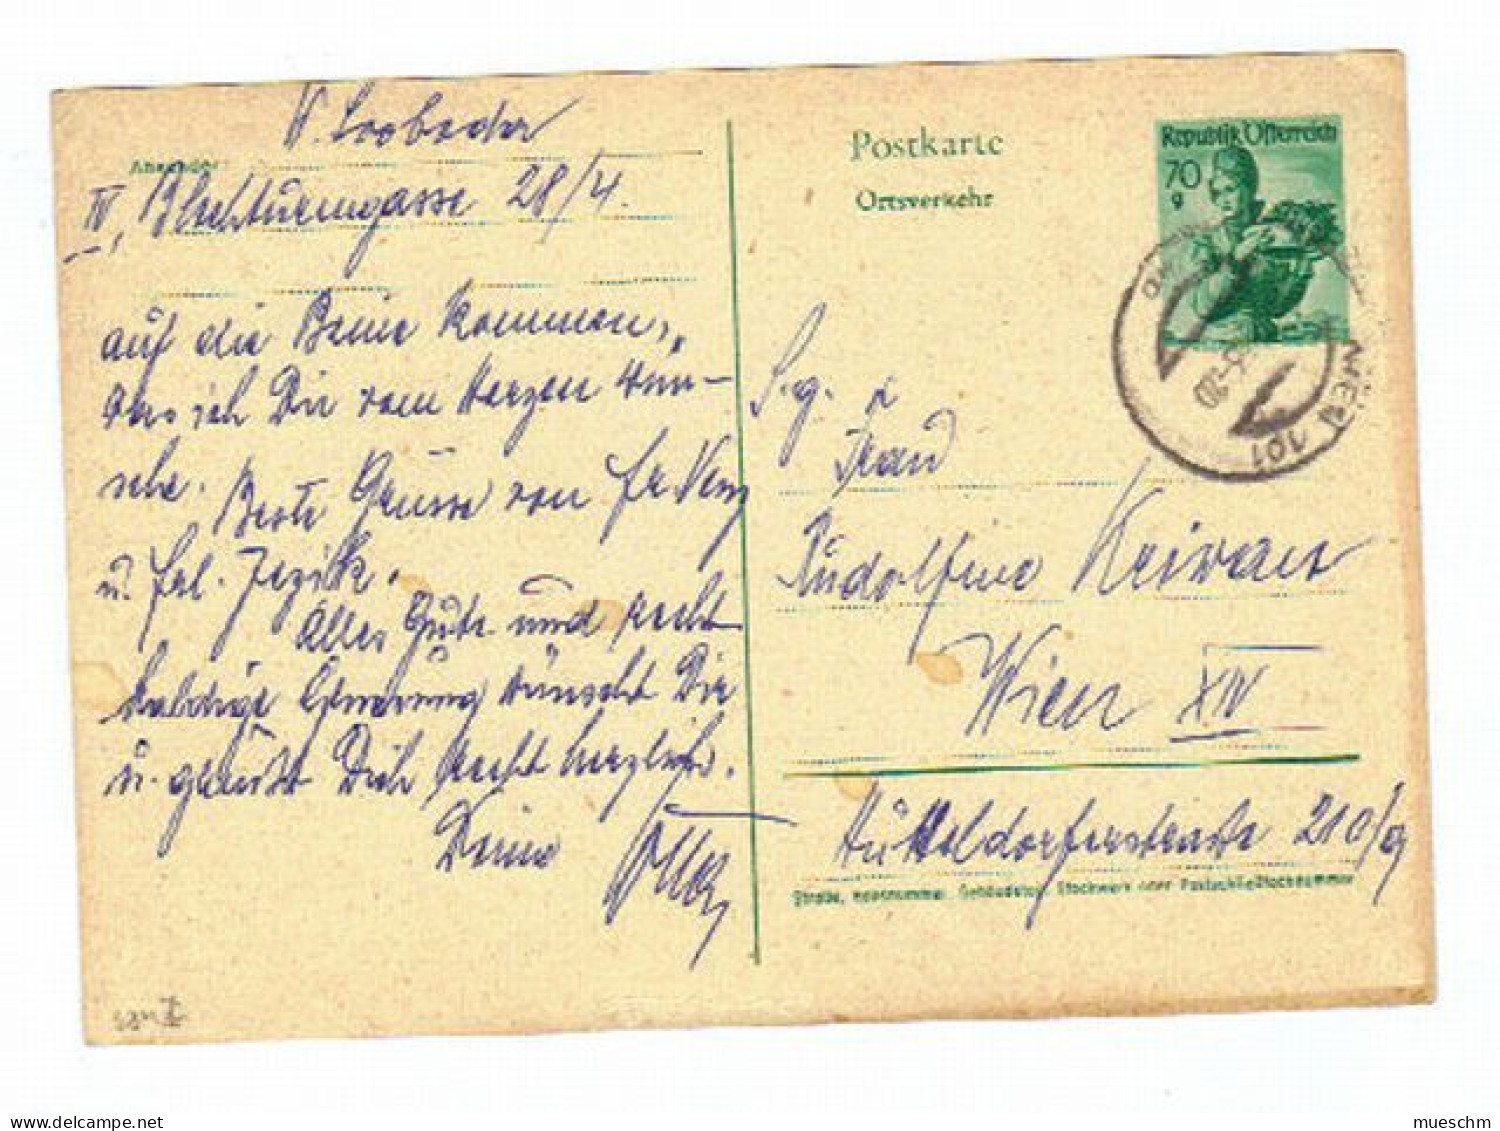 Österreich, 1963, Postkarte "Ortsverkehr" M. Eingedr. Frankatur 70g (10881W) - Postcards